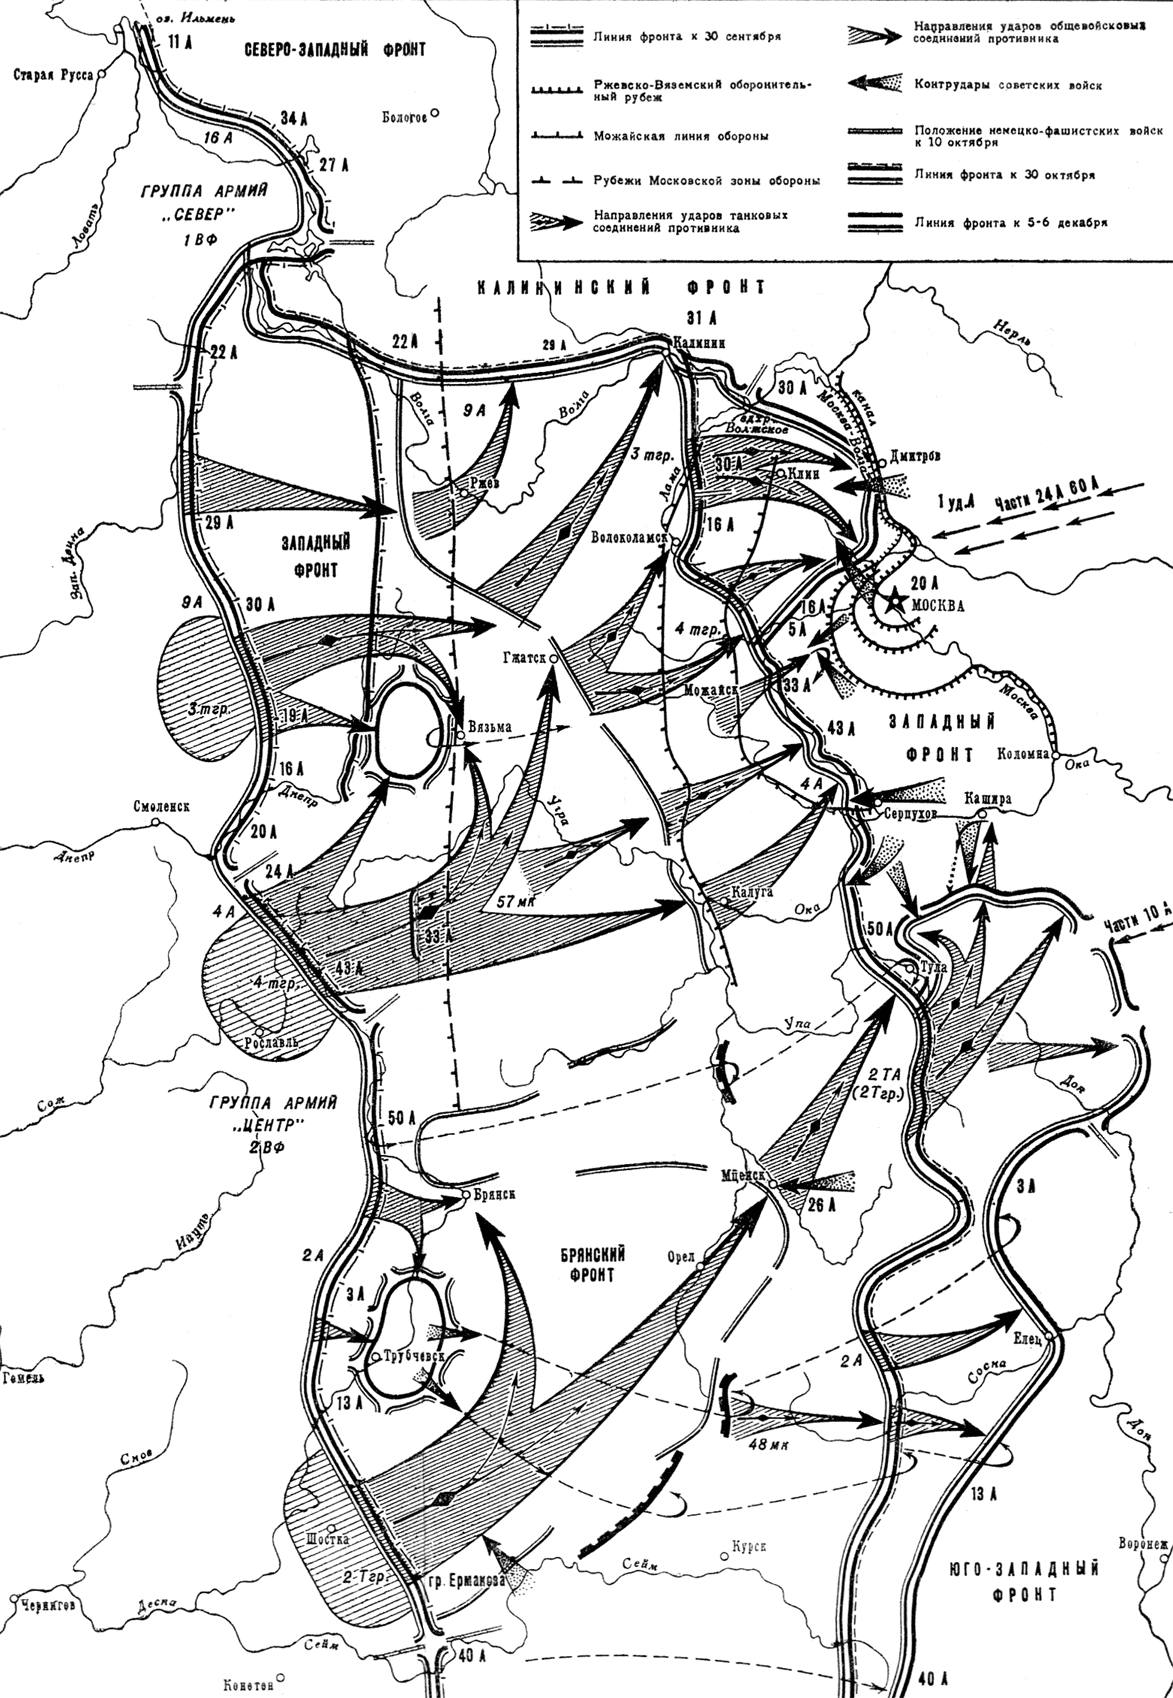 Оборона Москвы 1941 карта военных действий. Операция Тайфун битва карта. Карта боевых действий ВОВ битва за Москву. Карта битва под Москвой 1941. Схемы великих сражений